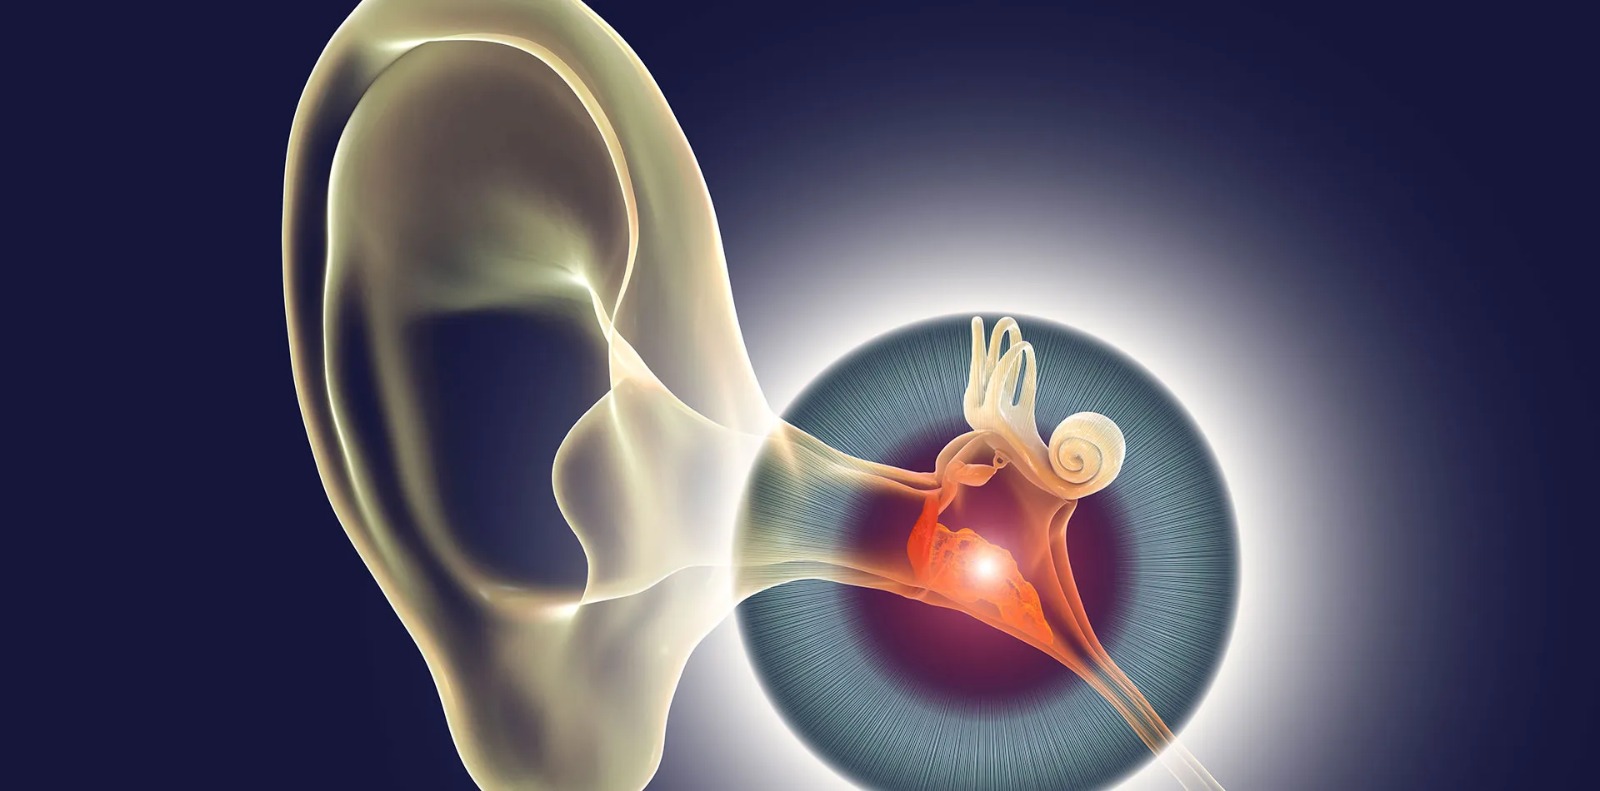 طبيب يوضّح لـ”الوئام” أعراض ونصائح للوقاية من التهابات الأذن الوسطى